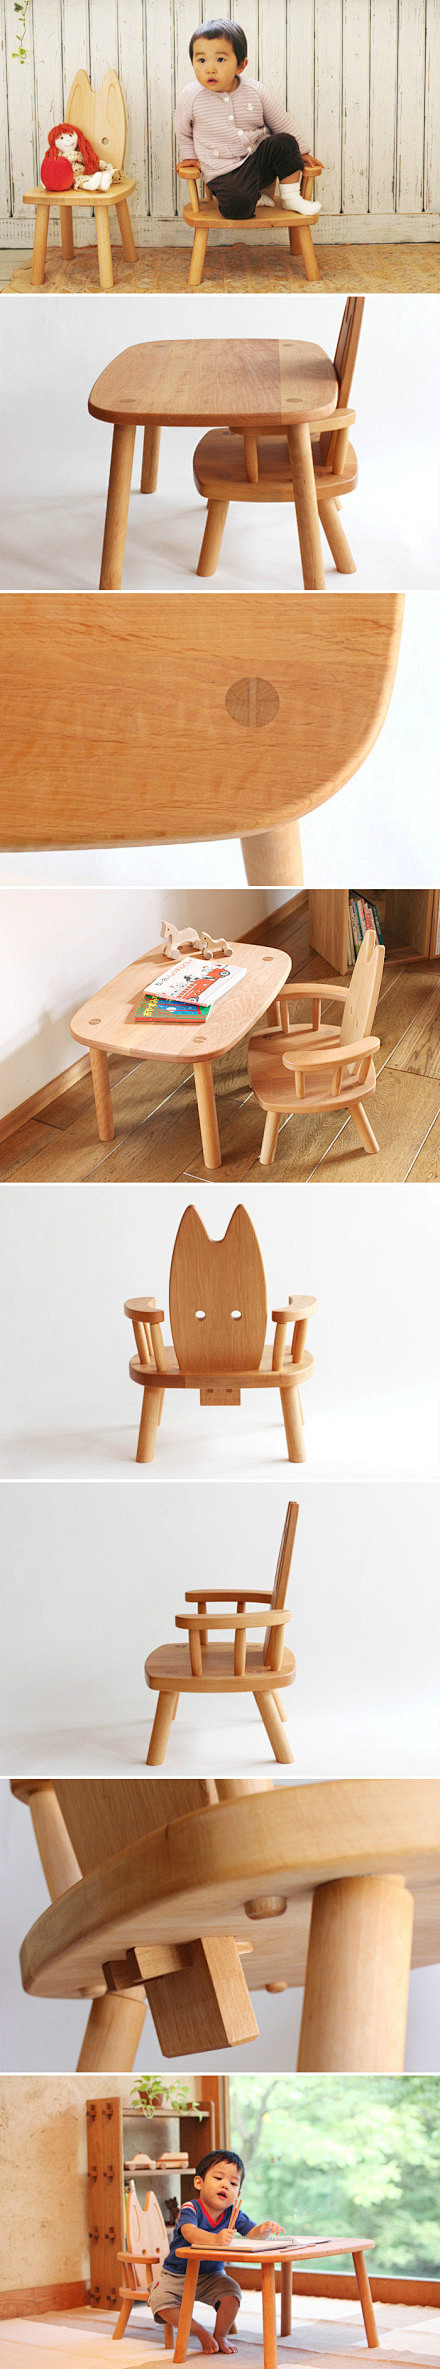 日本oakv的儿童家具作品